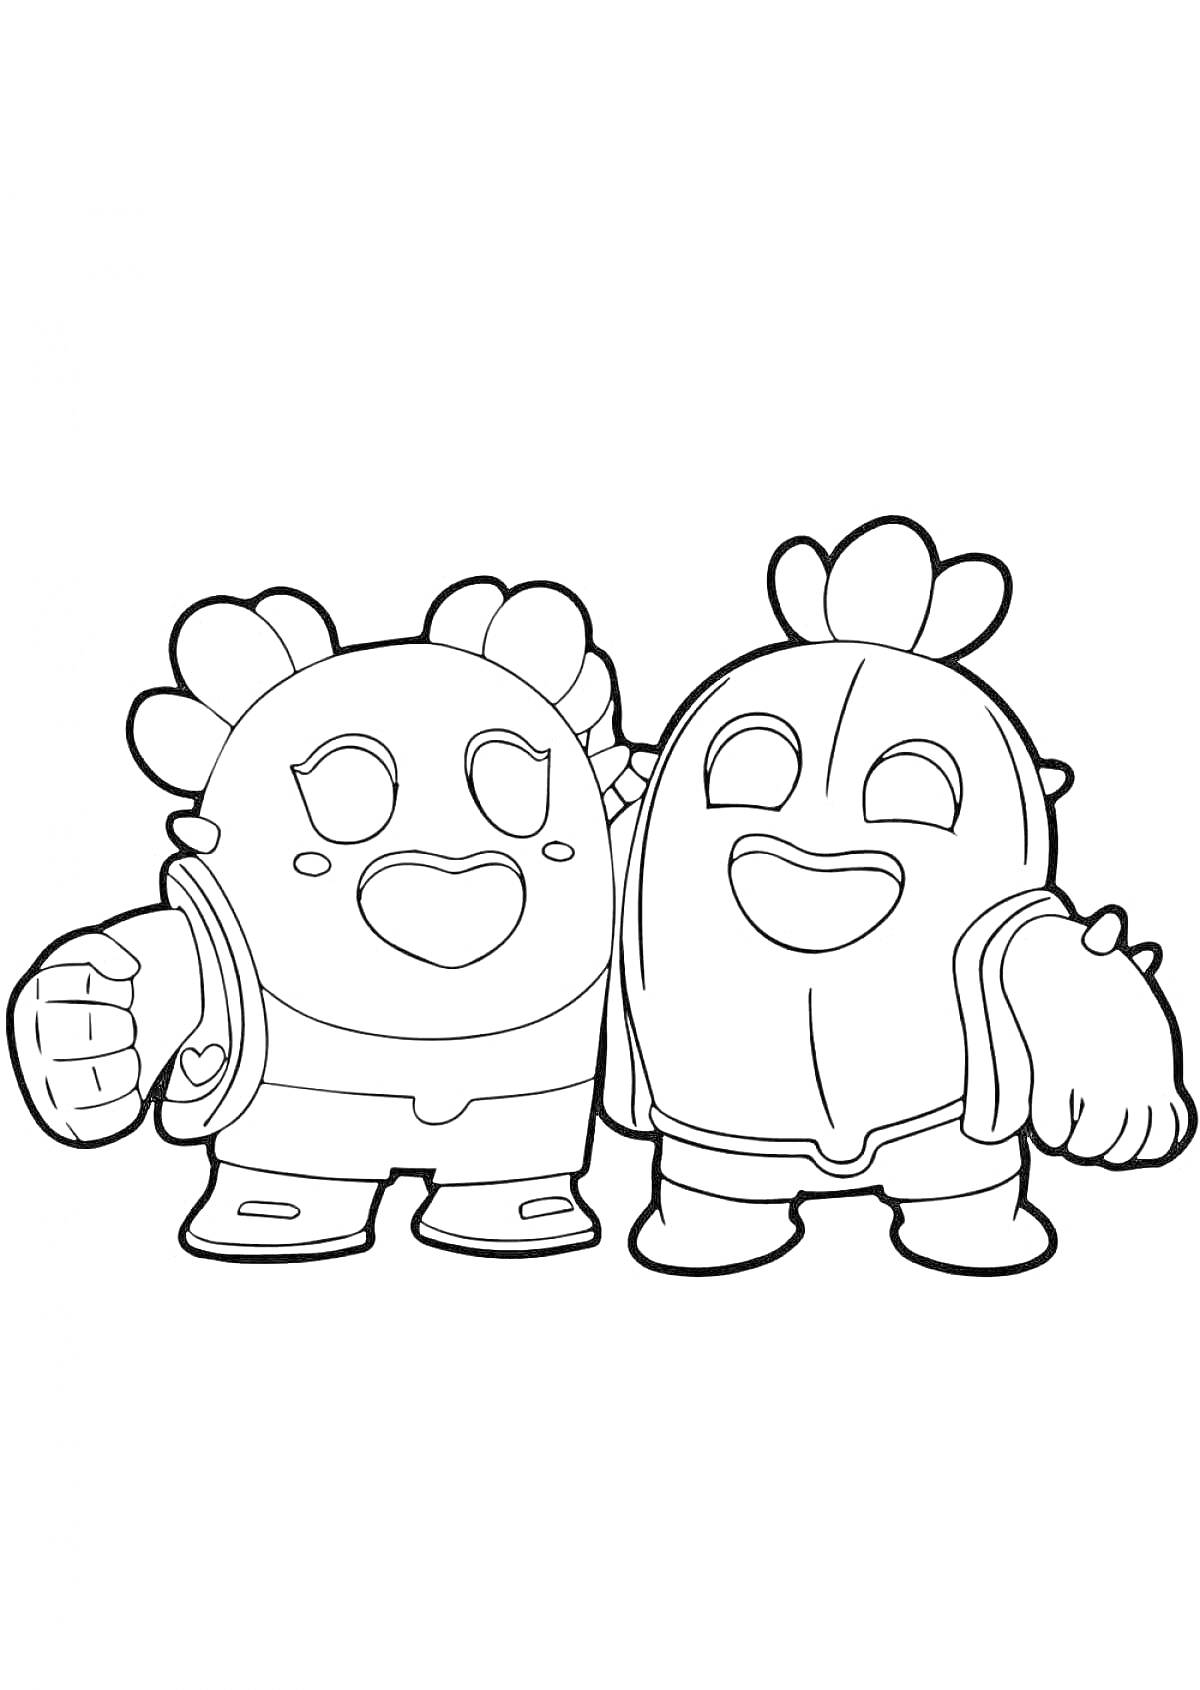 Раскраска Два персонажа Спайк из Браво Старс обнимаются и улыбаются